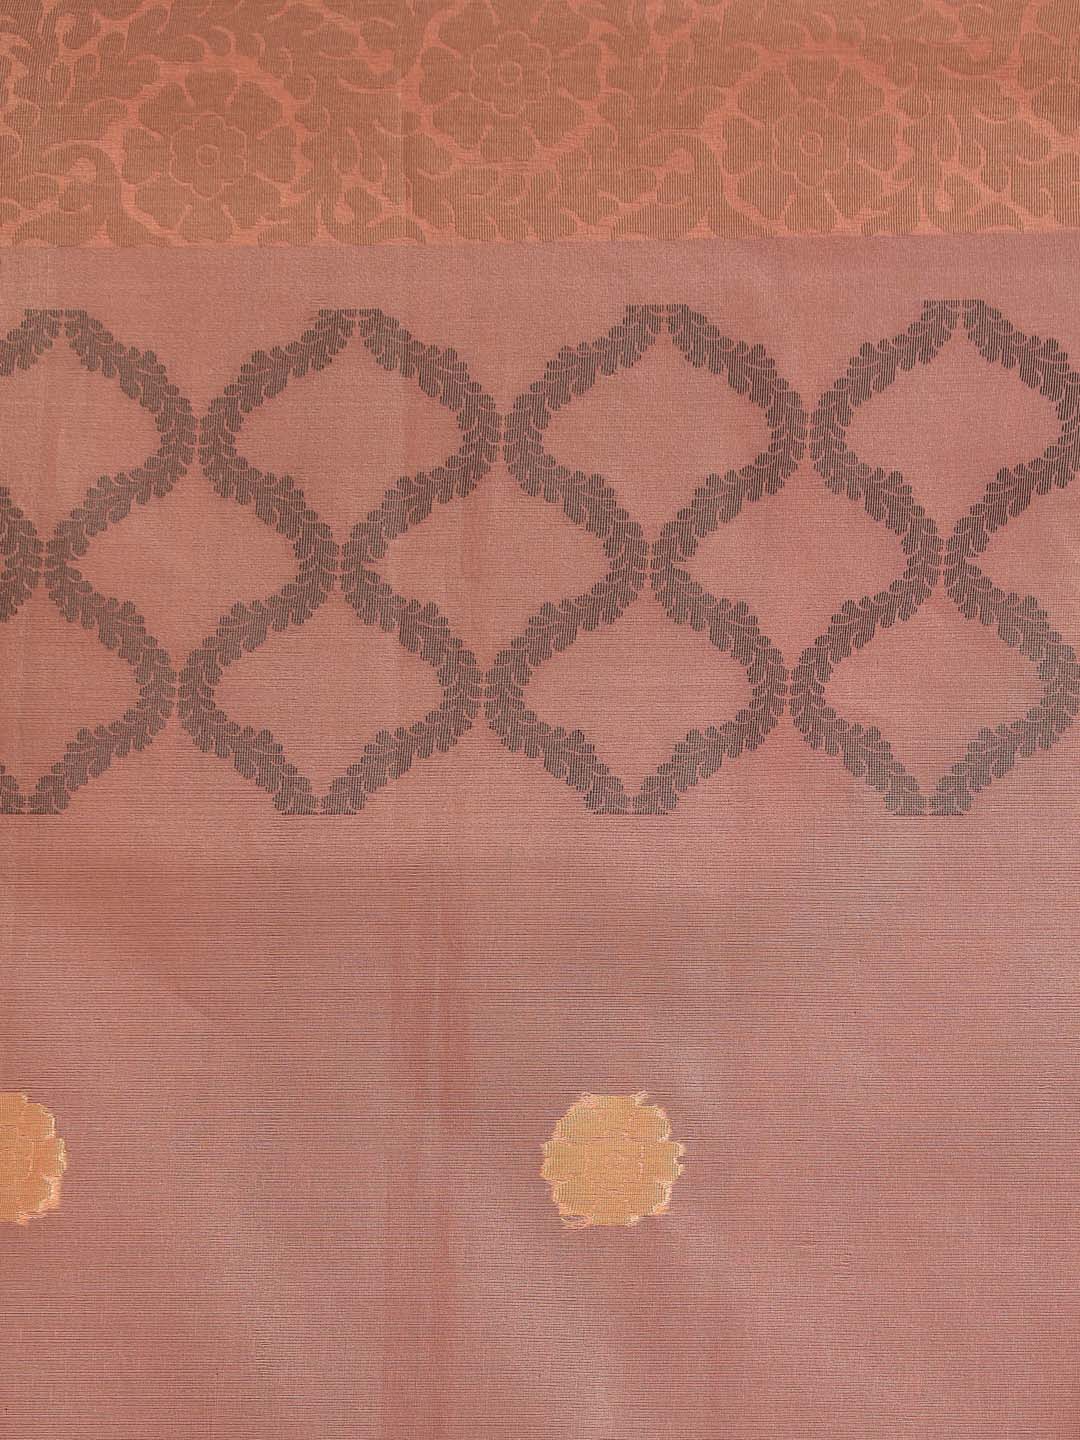 Indethnic Banarasi Peach Woven Design Party Wear Saree - Saree Detail View